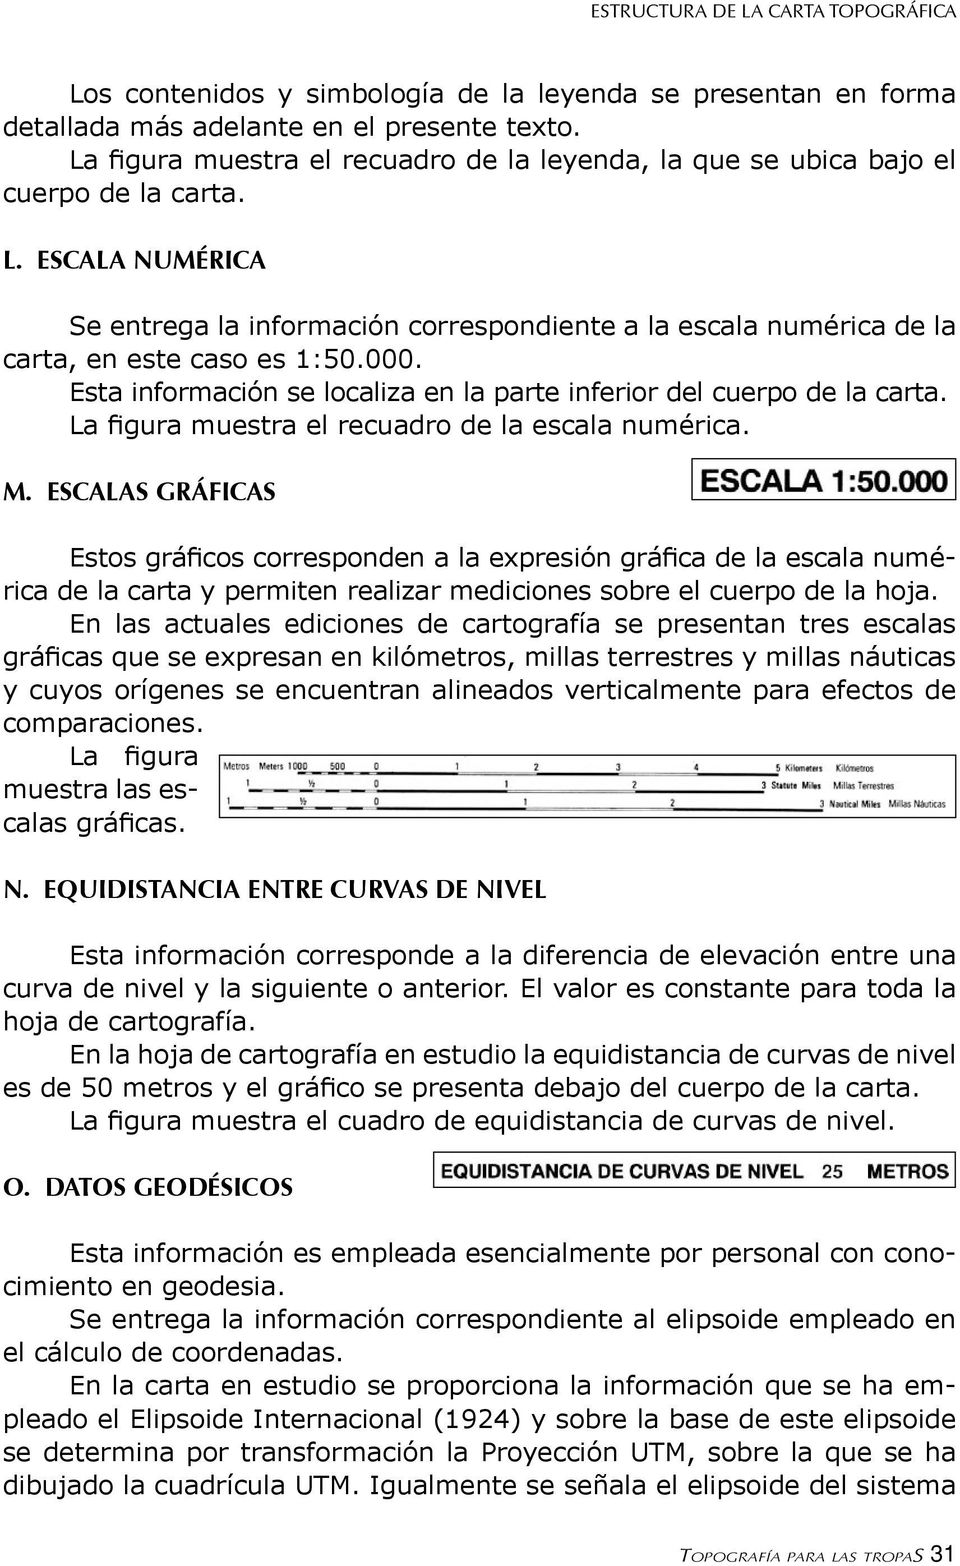 3. ESTRUCTURA DE LA CARTA TOPOGRÁFICA 3.1 ANTECEDENTES - PDF